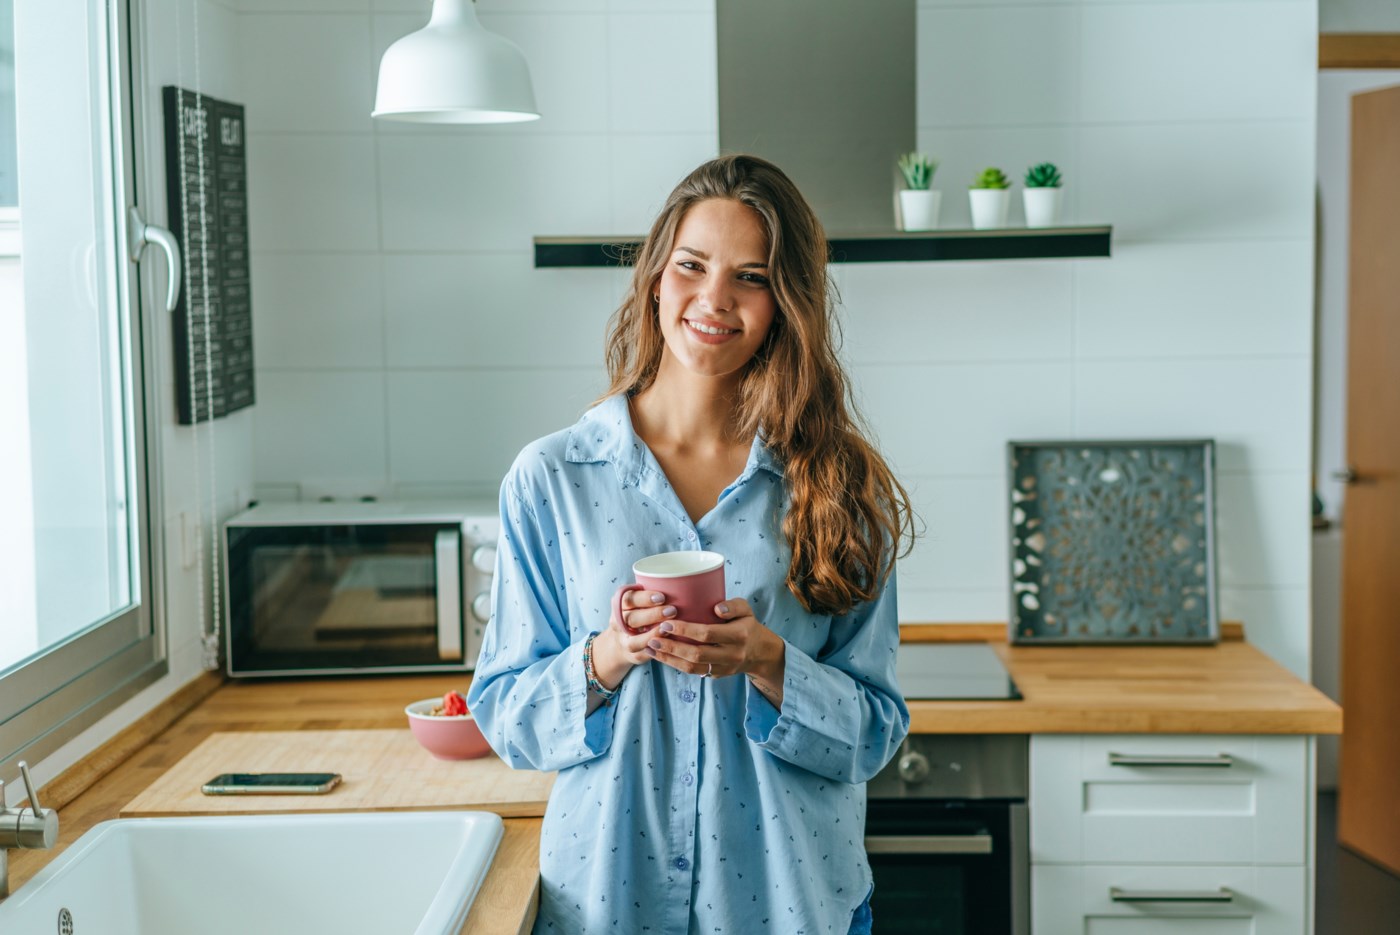 En ung kvinne smiler mot kameraet mens hun holder en kaffekopp, står på et moderne kjøkken med trebenker og hvite skap.